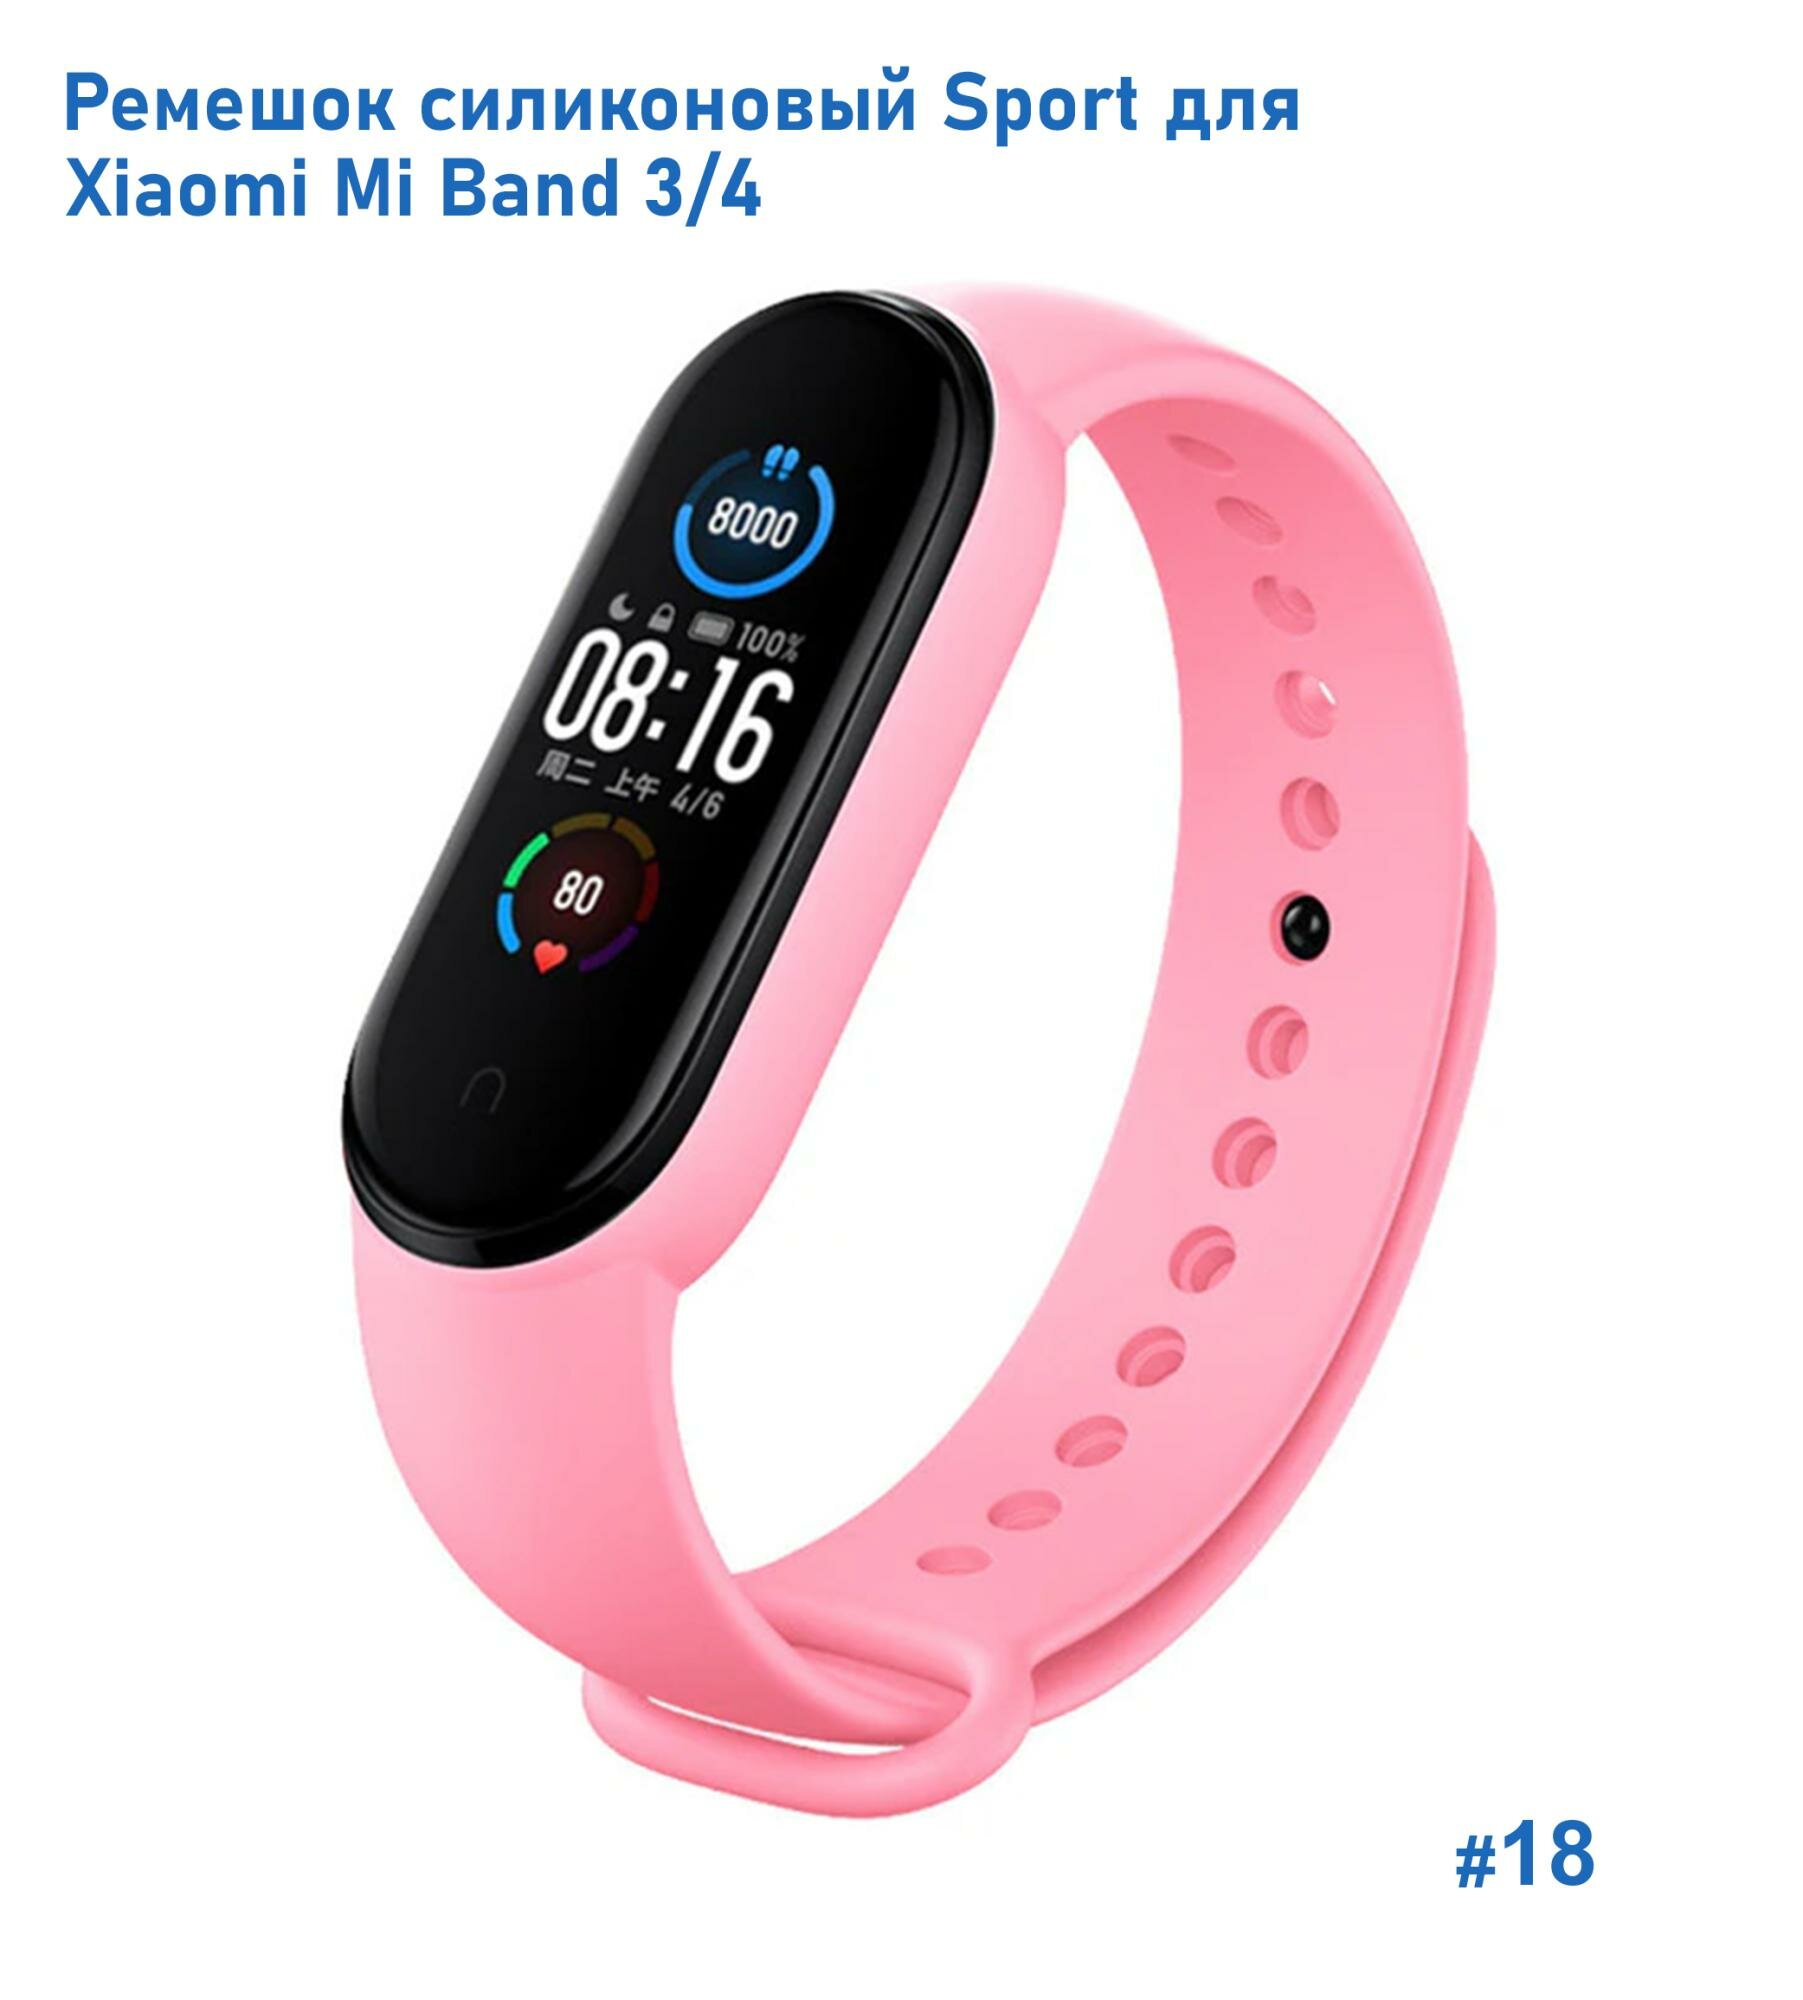 Ремешок силиконовый Sport для Xiaomi Mi Band 3/4, на кнопке, светло-розовый (18)